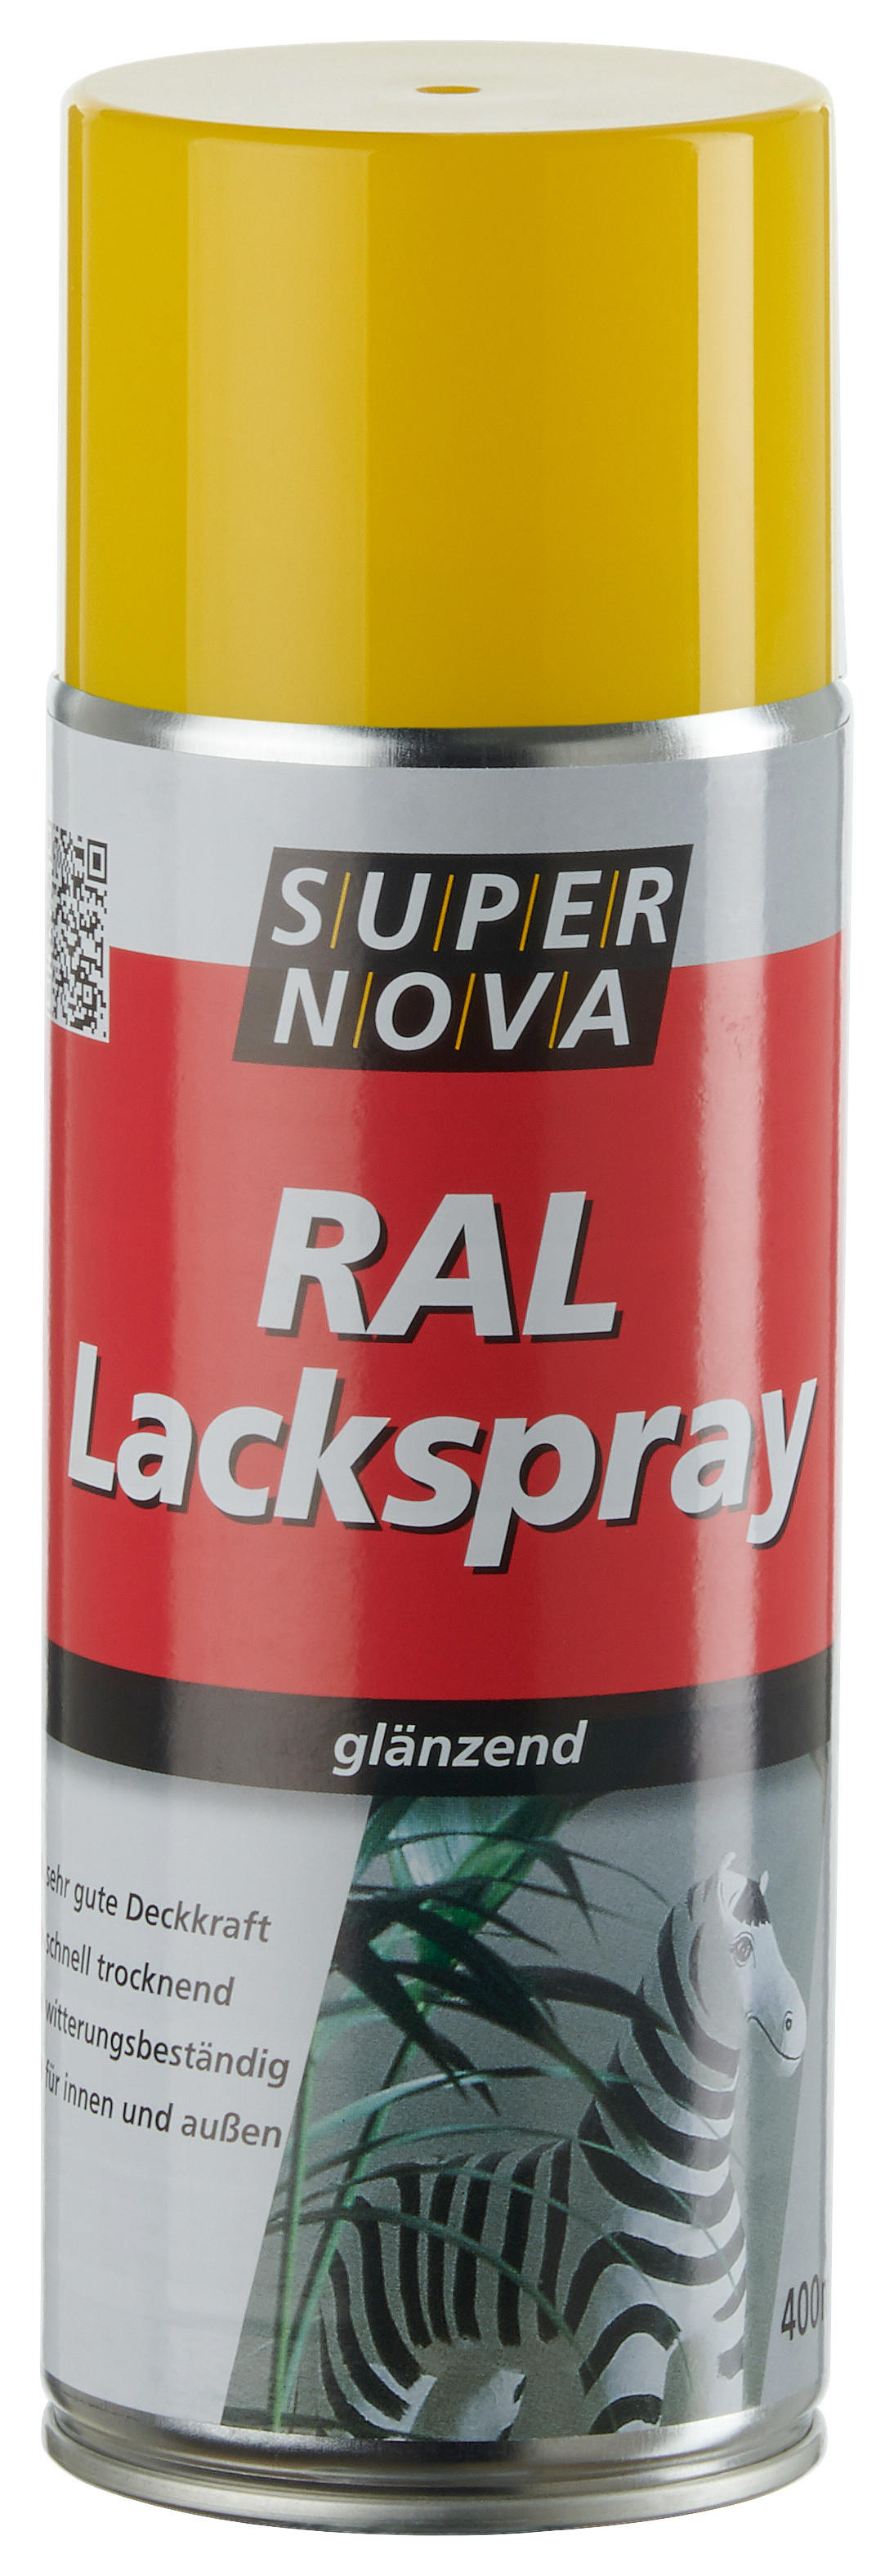 Super-Nova Lackspray rapsgelb glänzend ca. 0,4 l Lackspray 400ml - rapsgelb (400ml)